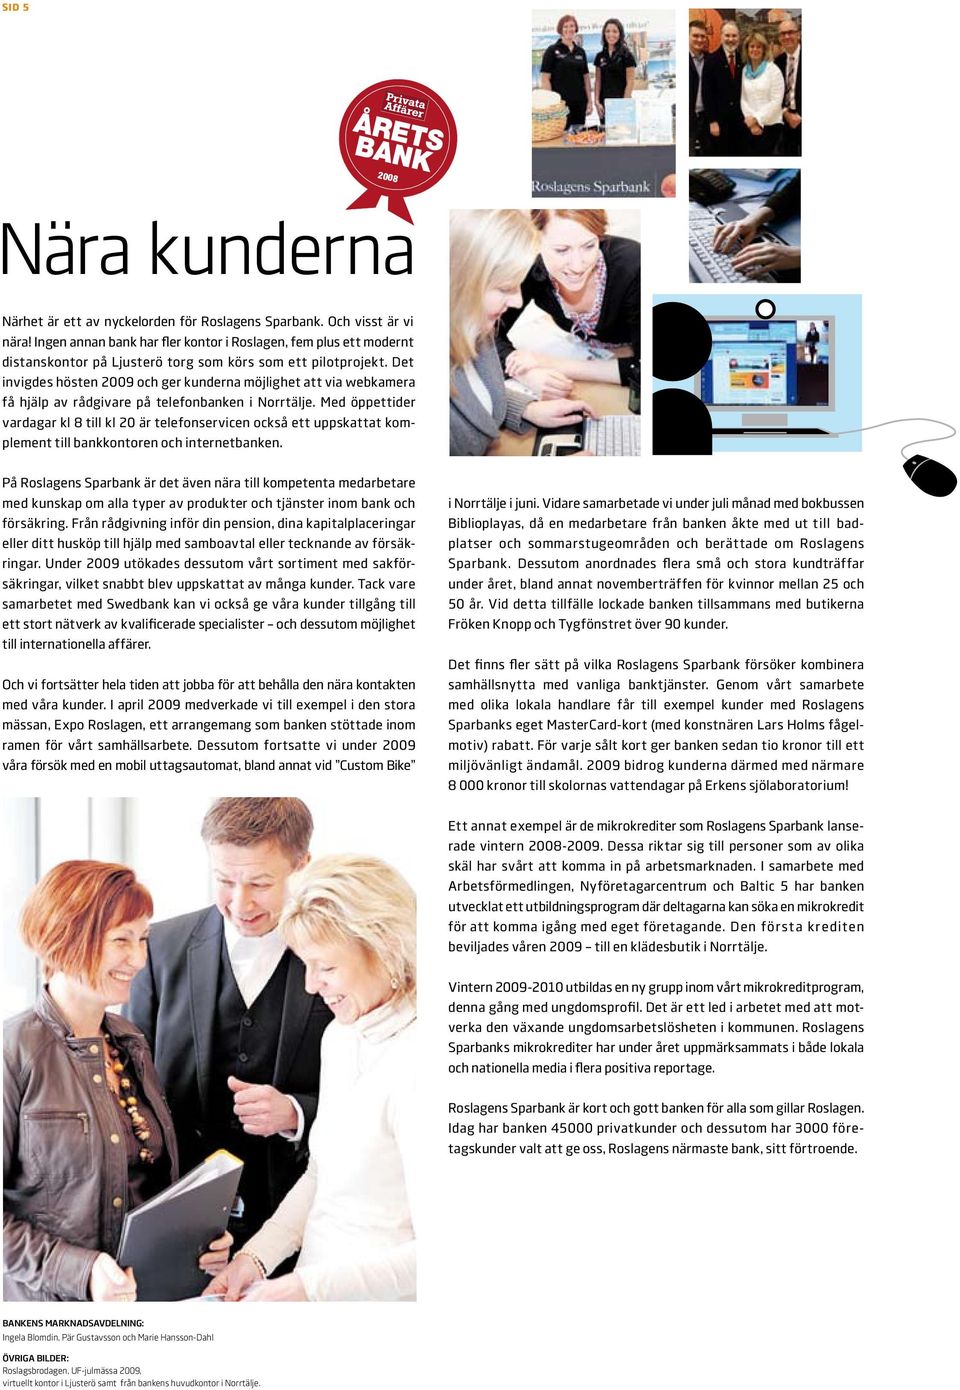 Det invigdes hösten 2009 och ger kunderna möjlighet att via webkamera få hjälp av rådgivare på telefonbanken i Norrtälje.